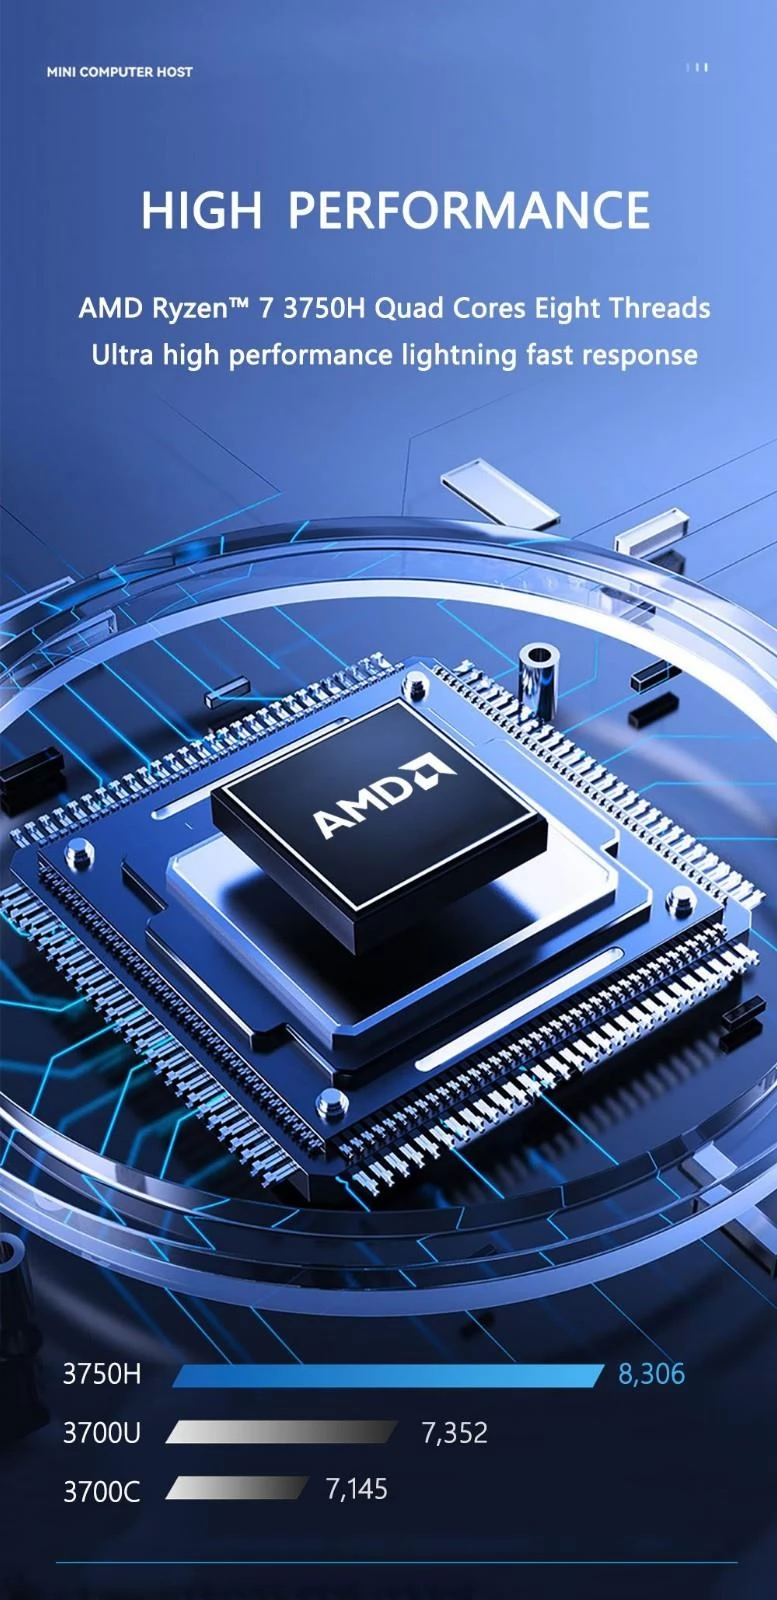 KUU Mingar 3 MINI PC AMD Ryzen 7 3750H Processor tot 4.0 GHz, 8GB DDR4 512GB SSD, Windows 10, BT5.0, 2.4/5G WiFi